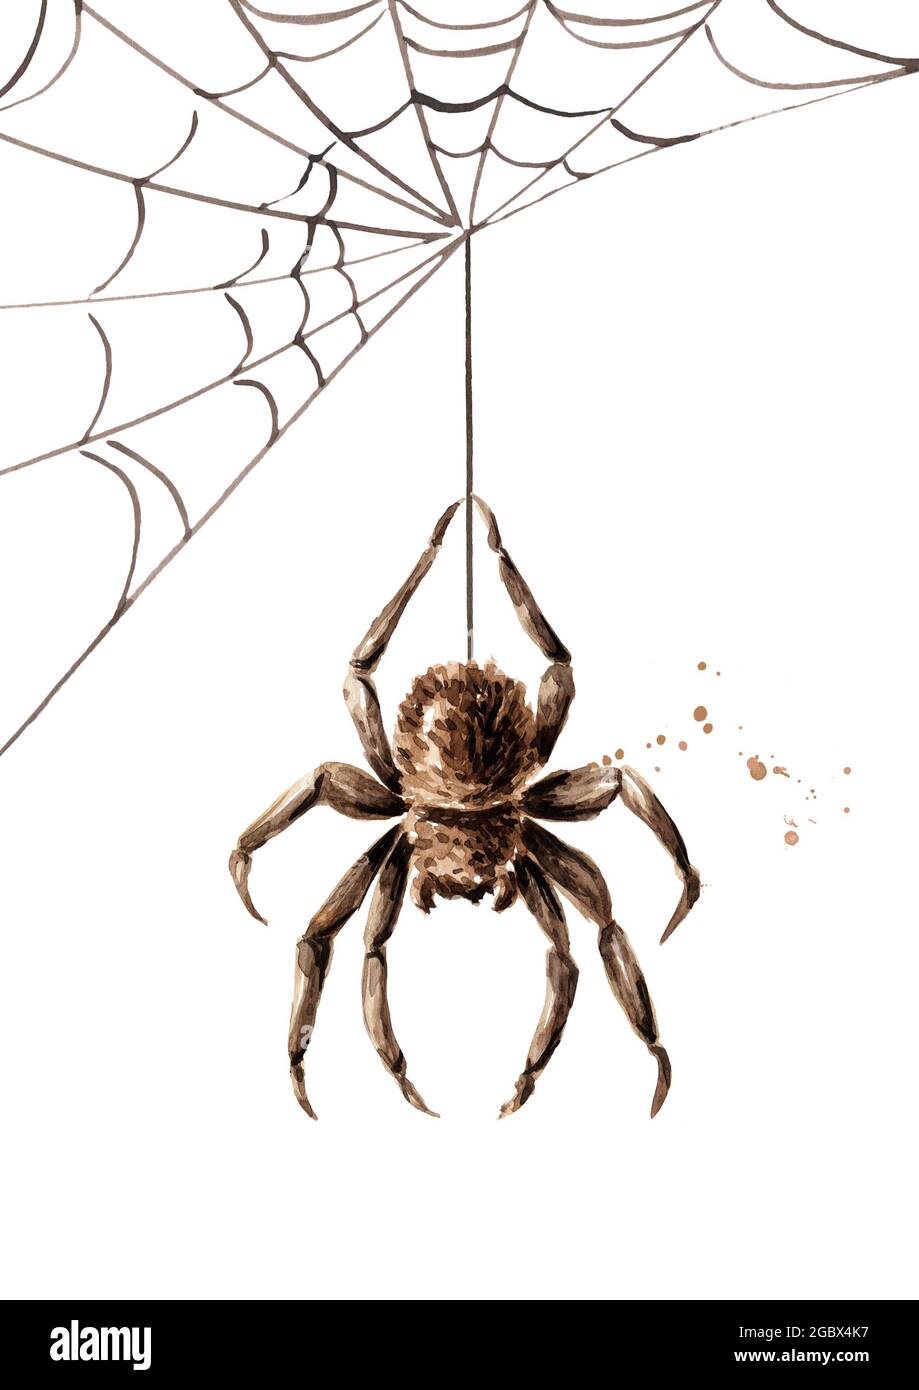 Spinne, die auf einem Netz hängt. Handgezeichnete Aquarellillustration,  isoliert auf weißem Hintergrund Stockfotografie - Alamy